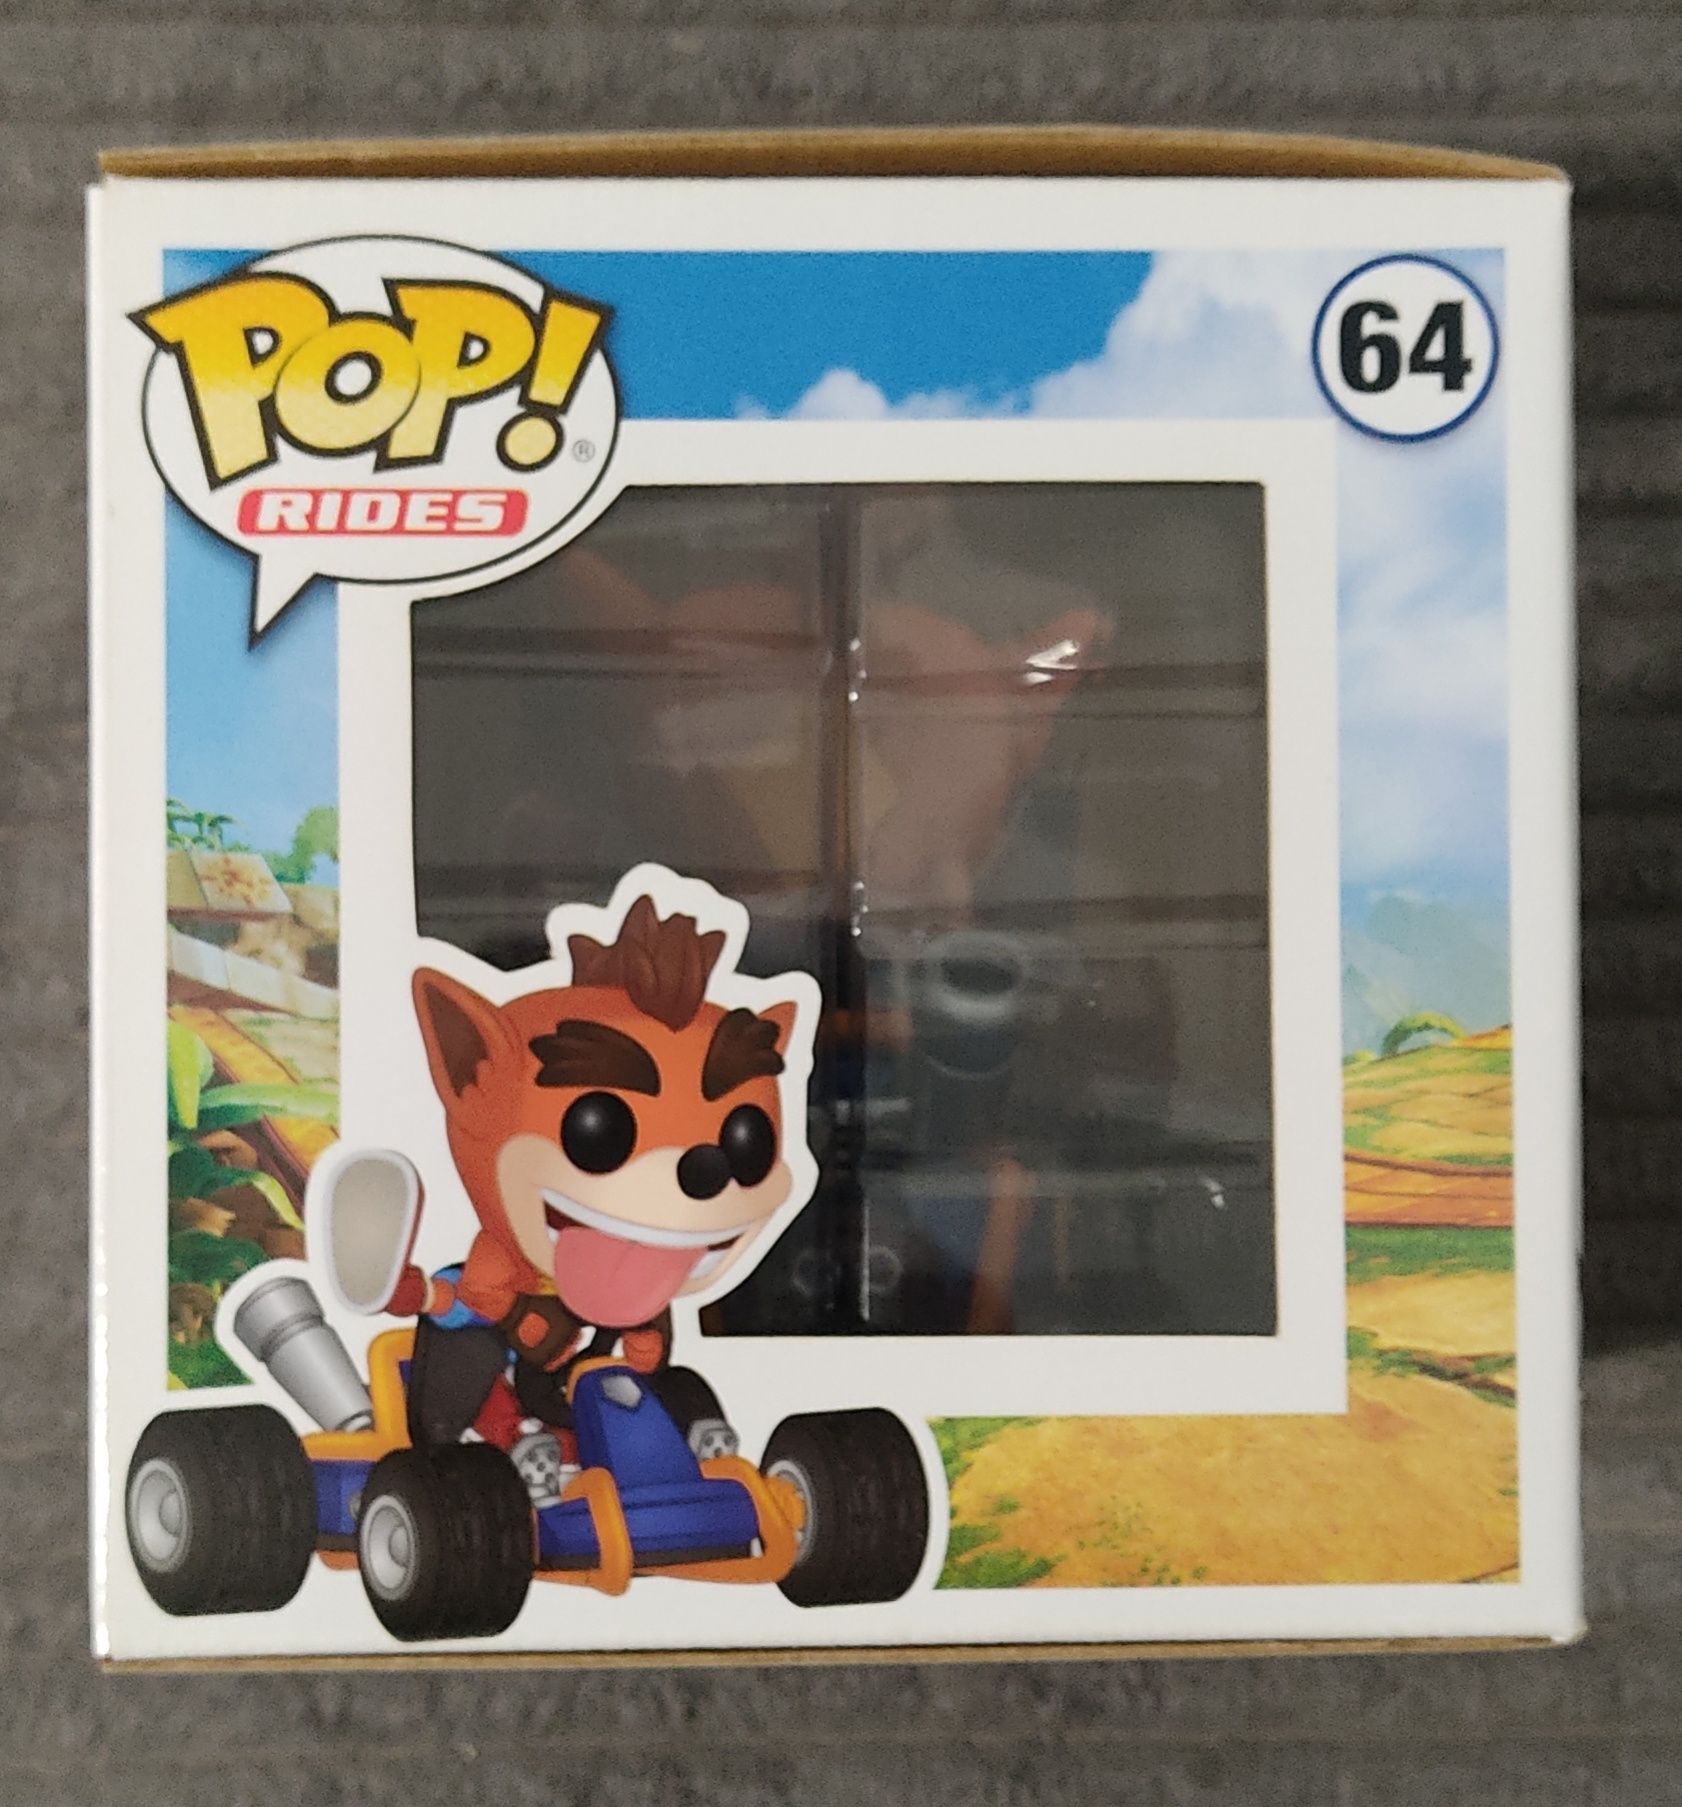 FUNKO POP * Crash Bandicoot #64 ! Pop Rides CTR